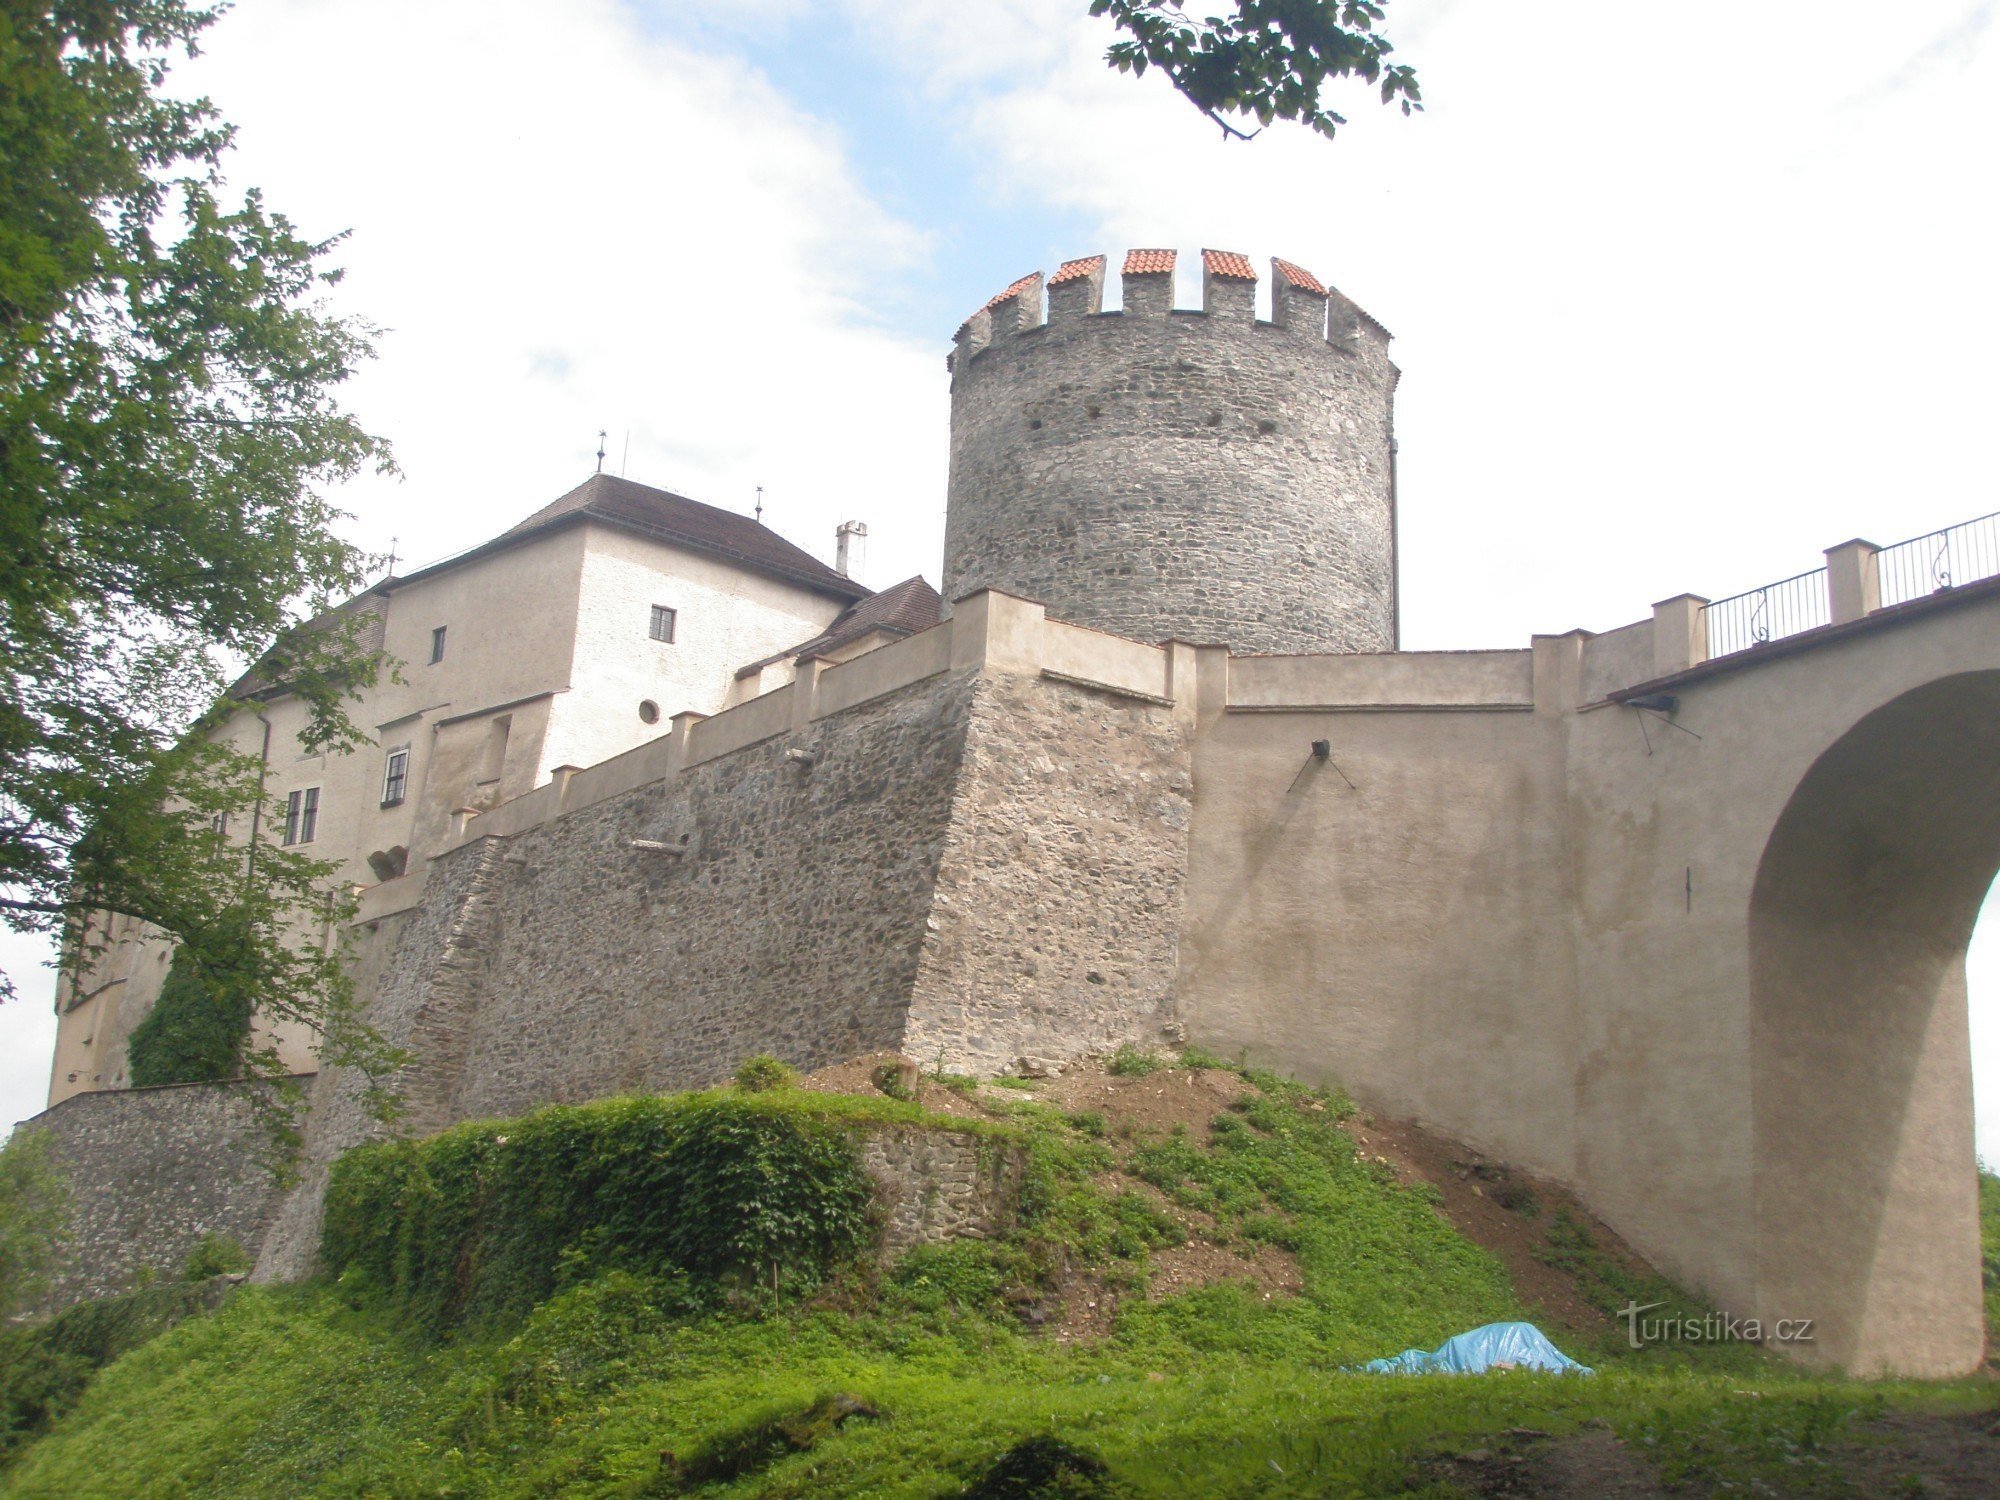 Dvorac Češki Šternberk